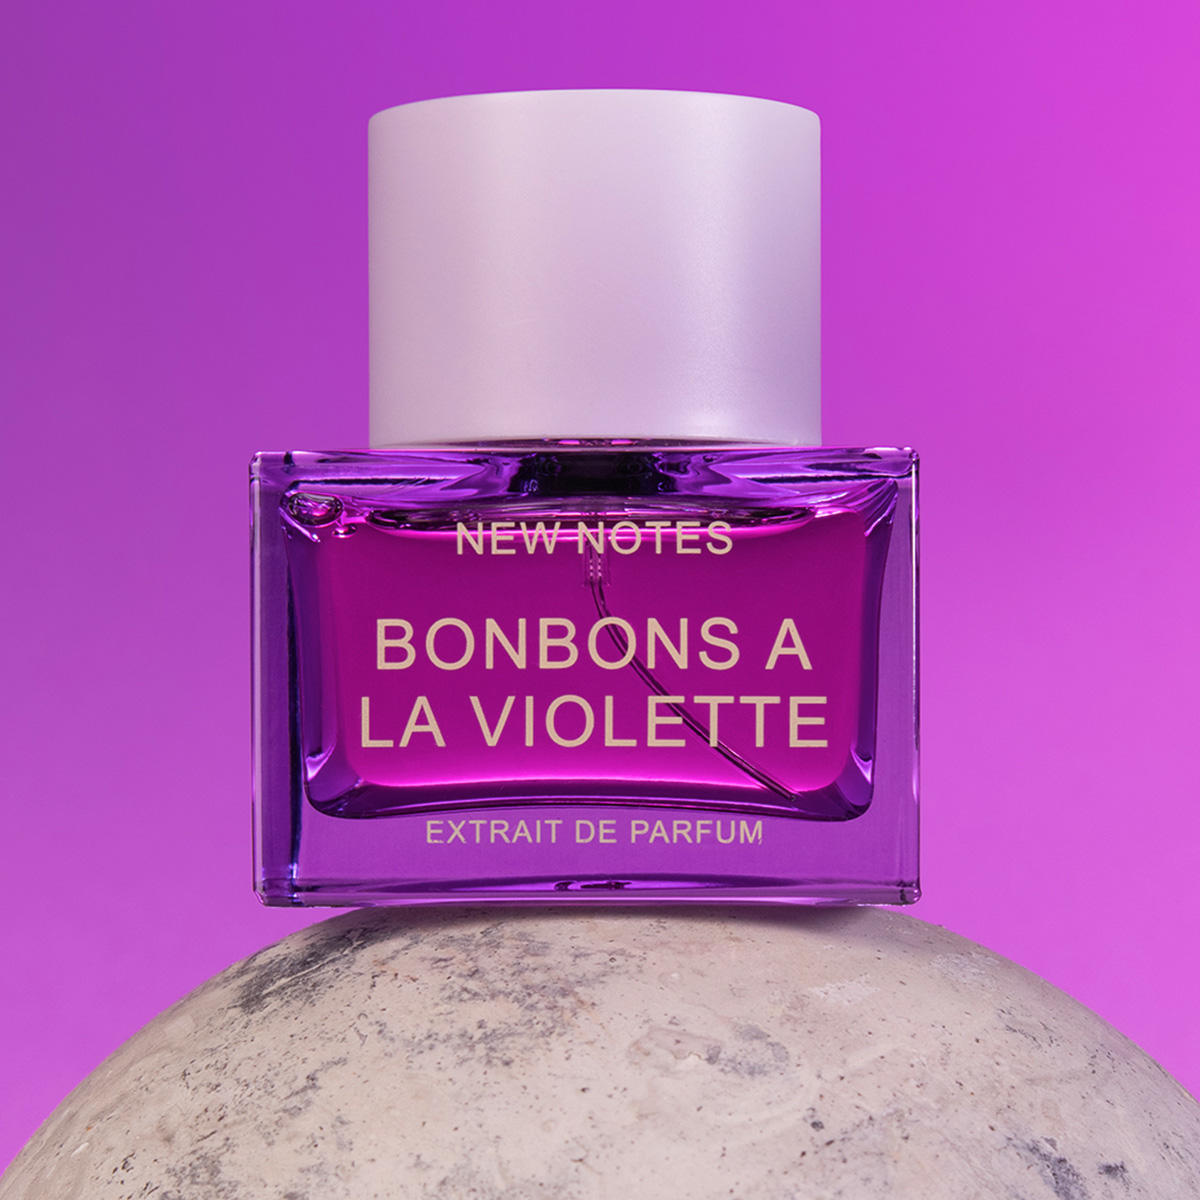 New Notes Bonbons A La Violette Extrait de Parfum 50 ml - 5